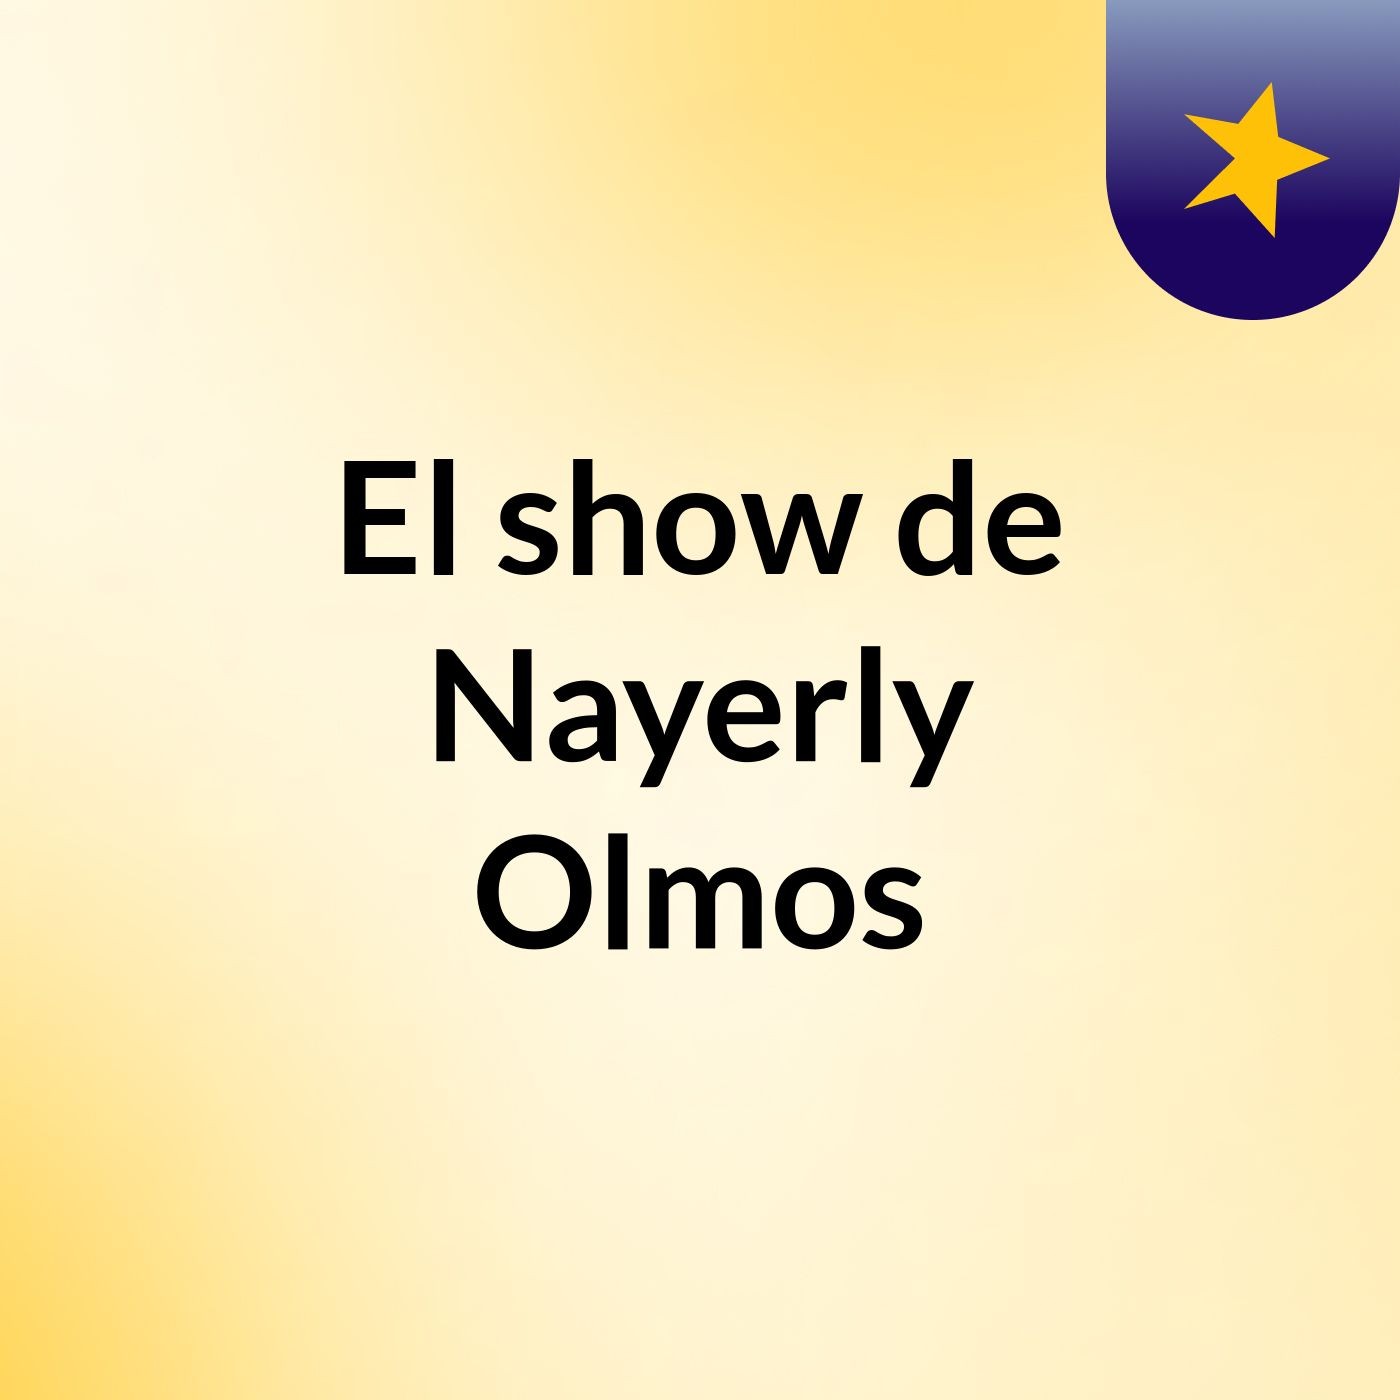 El show de Nayerly Olmos